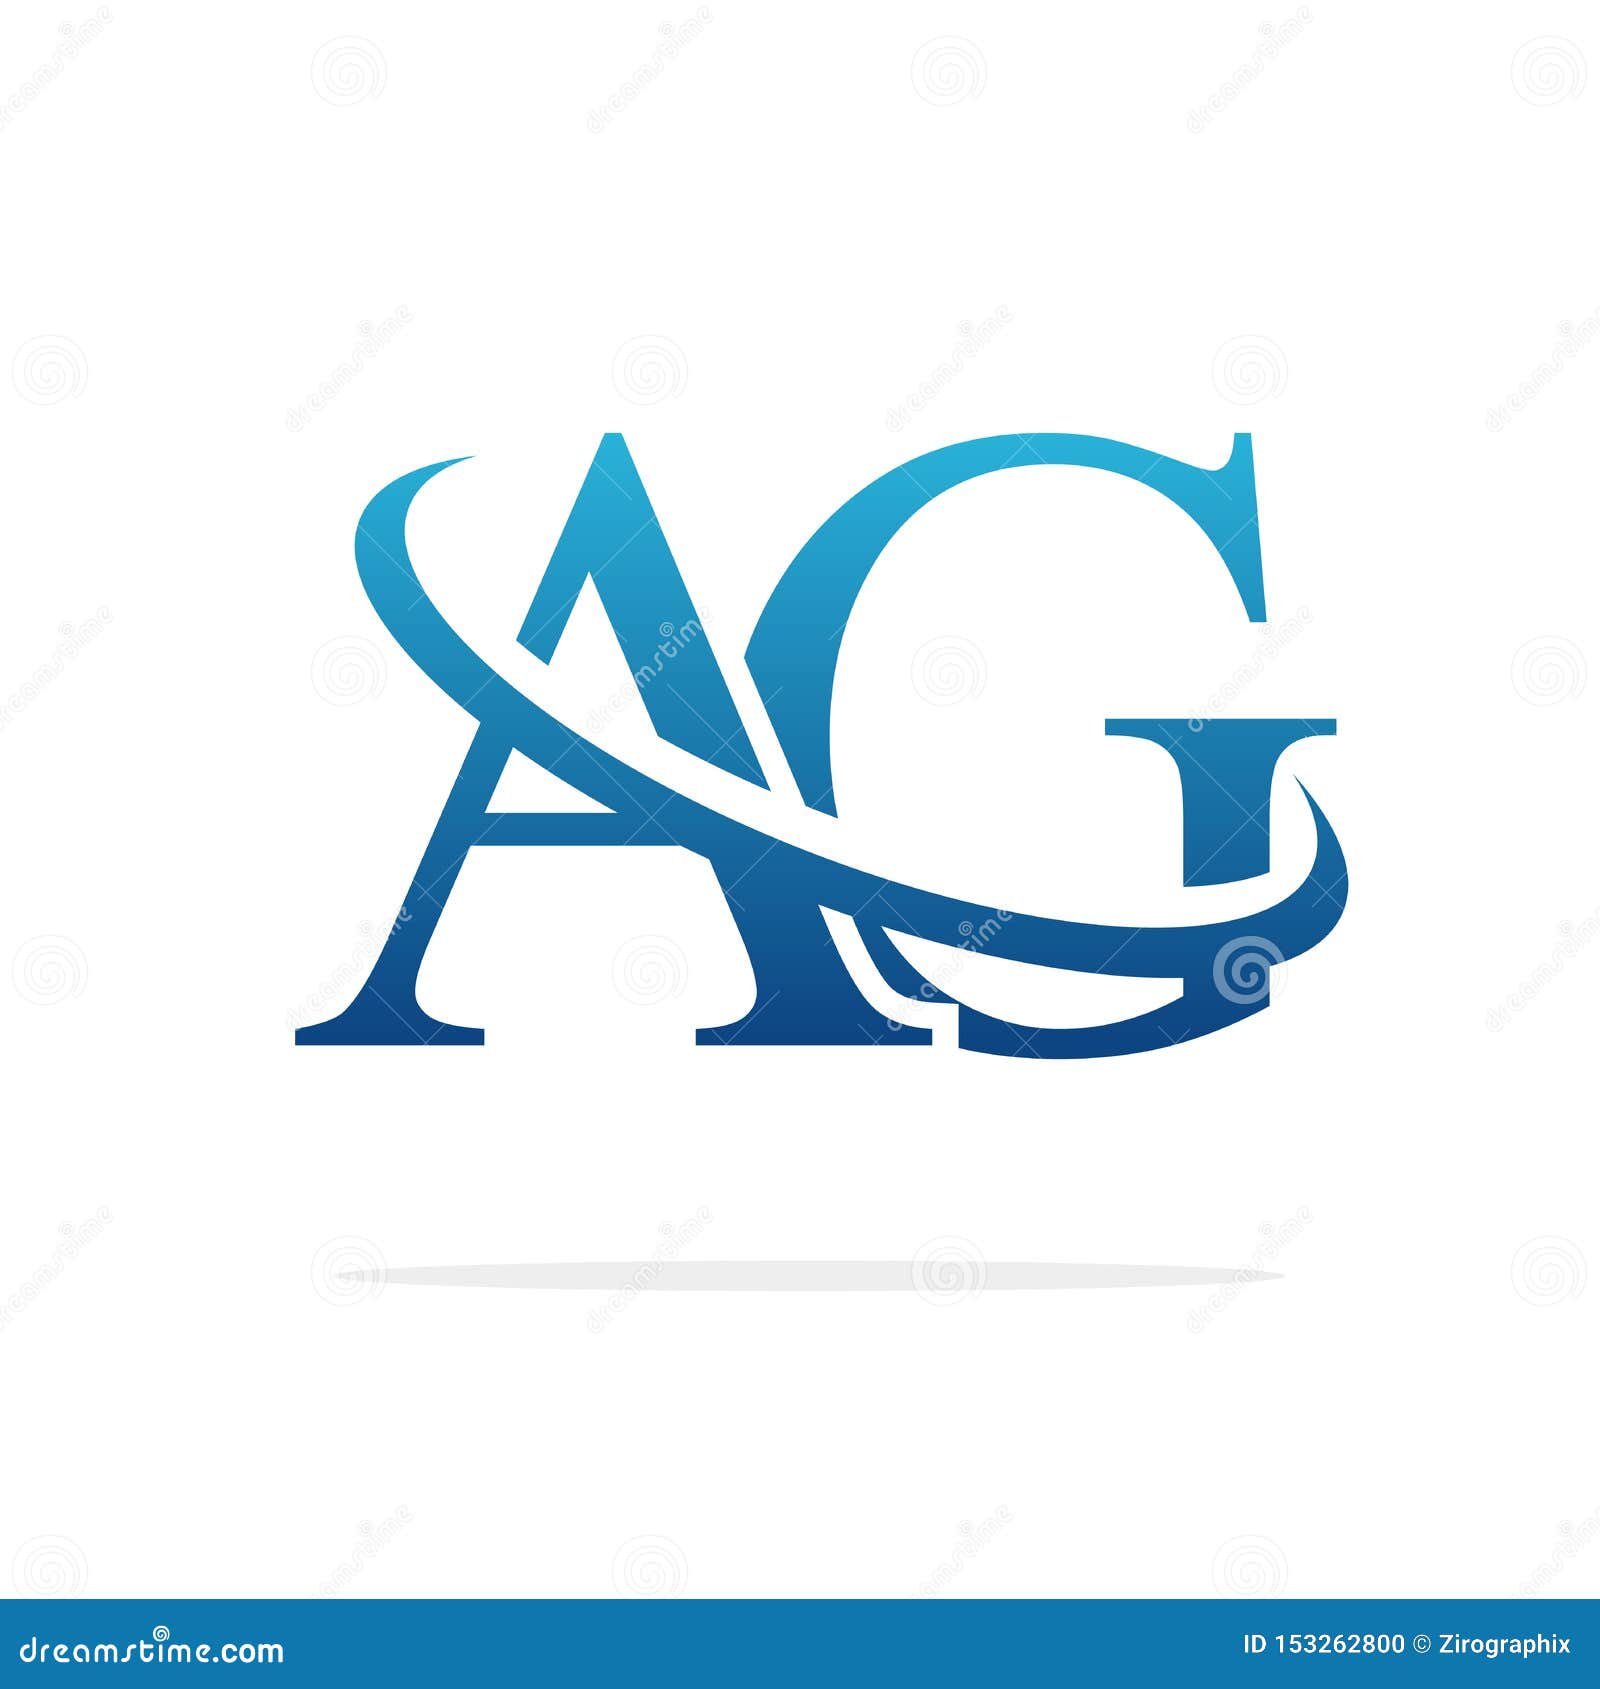 AG Creative Logo Design Vector Art Stock Illustration - Illustration of ...